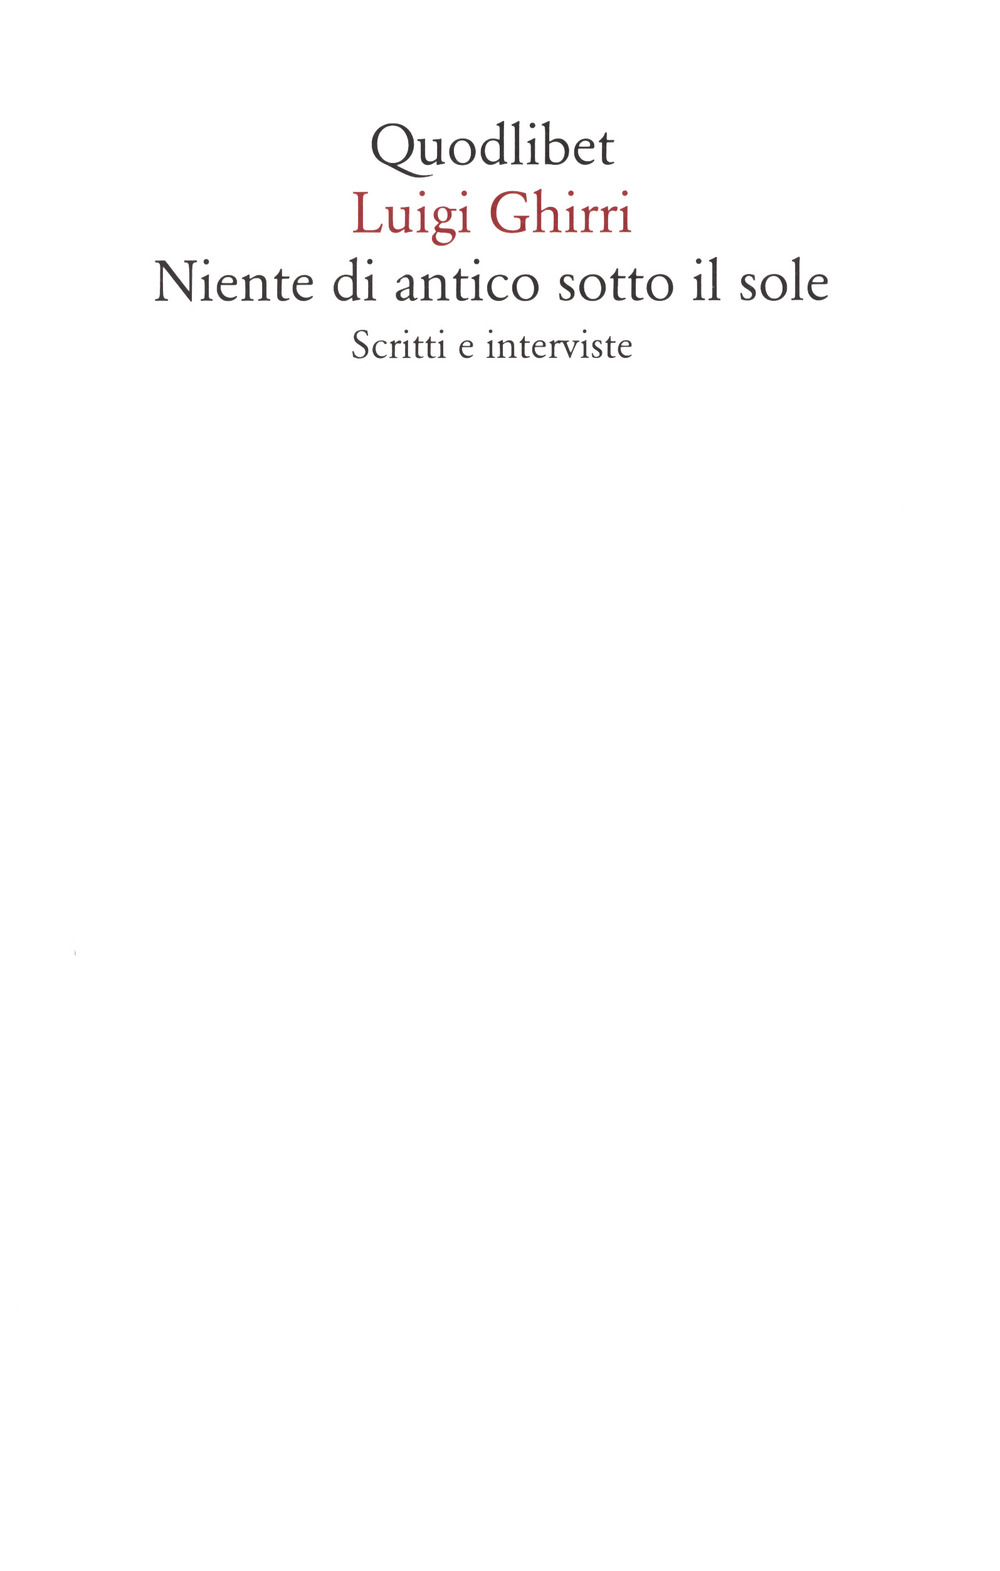 Libri Luigi Ghirri - Niente Di Antico Sotto Il Sole. Scritti E Interviste NUOVO SIGILLATO, EDIZIONE DEL 19/05/2021 SUBITO DISPONIBILE